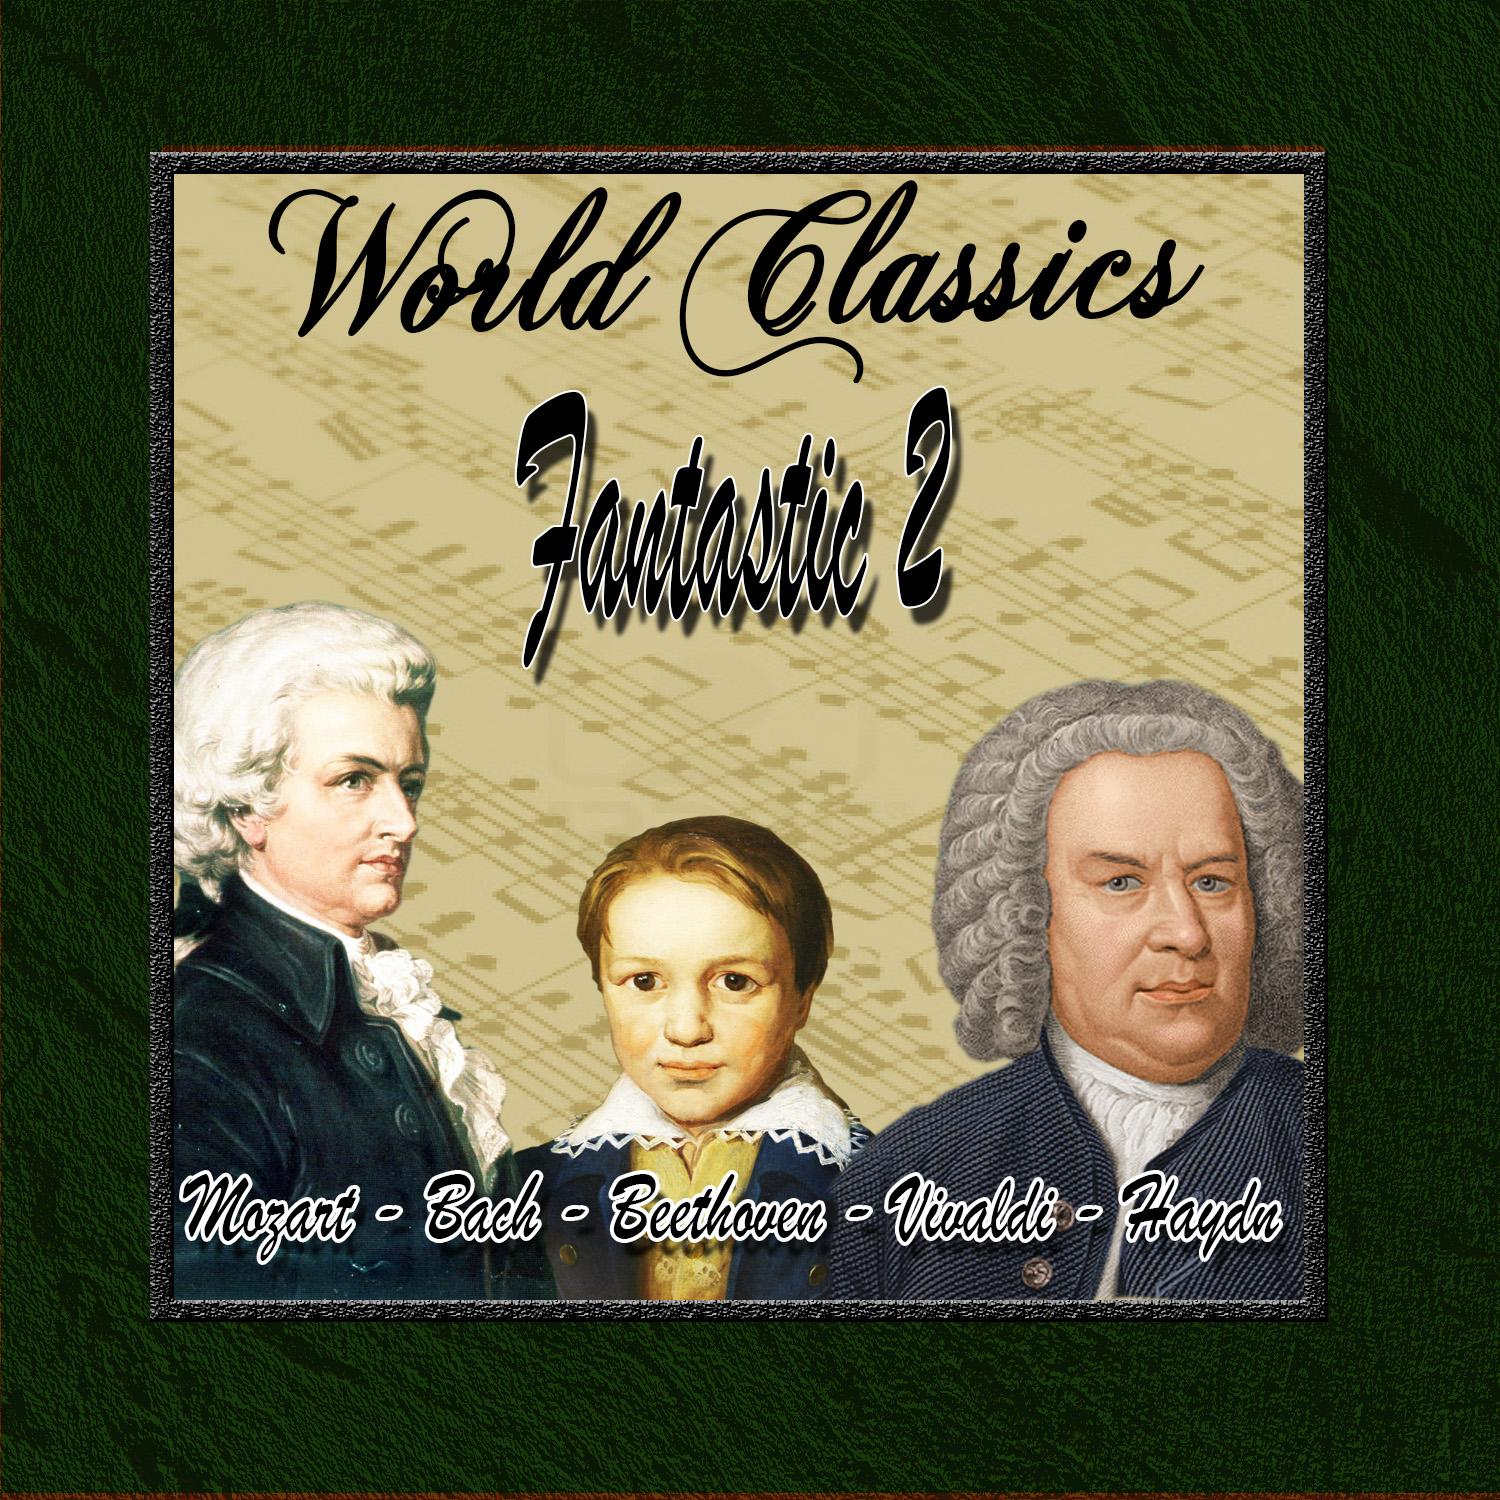 World Classics: Fantastic 2